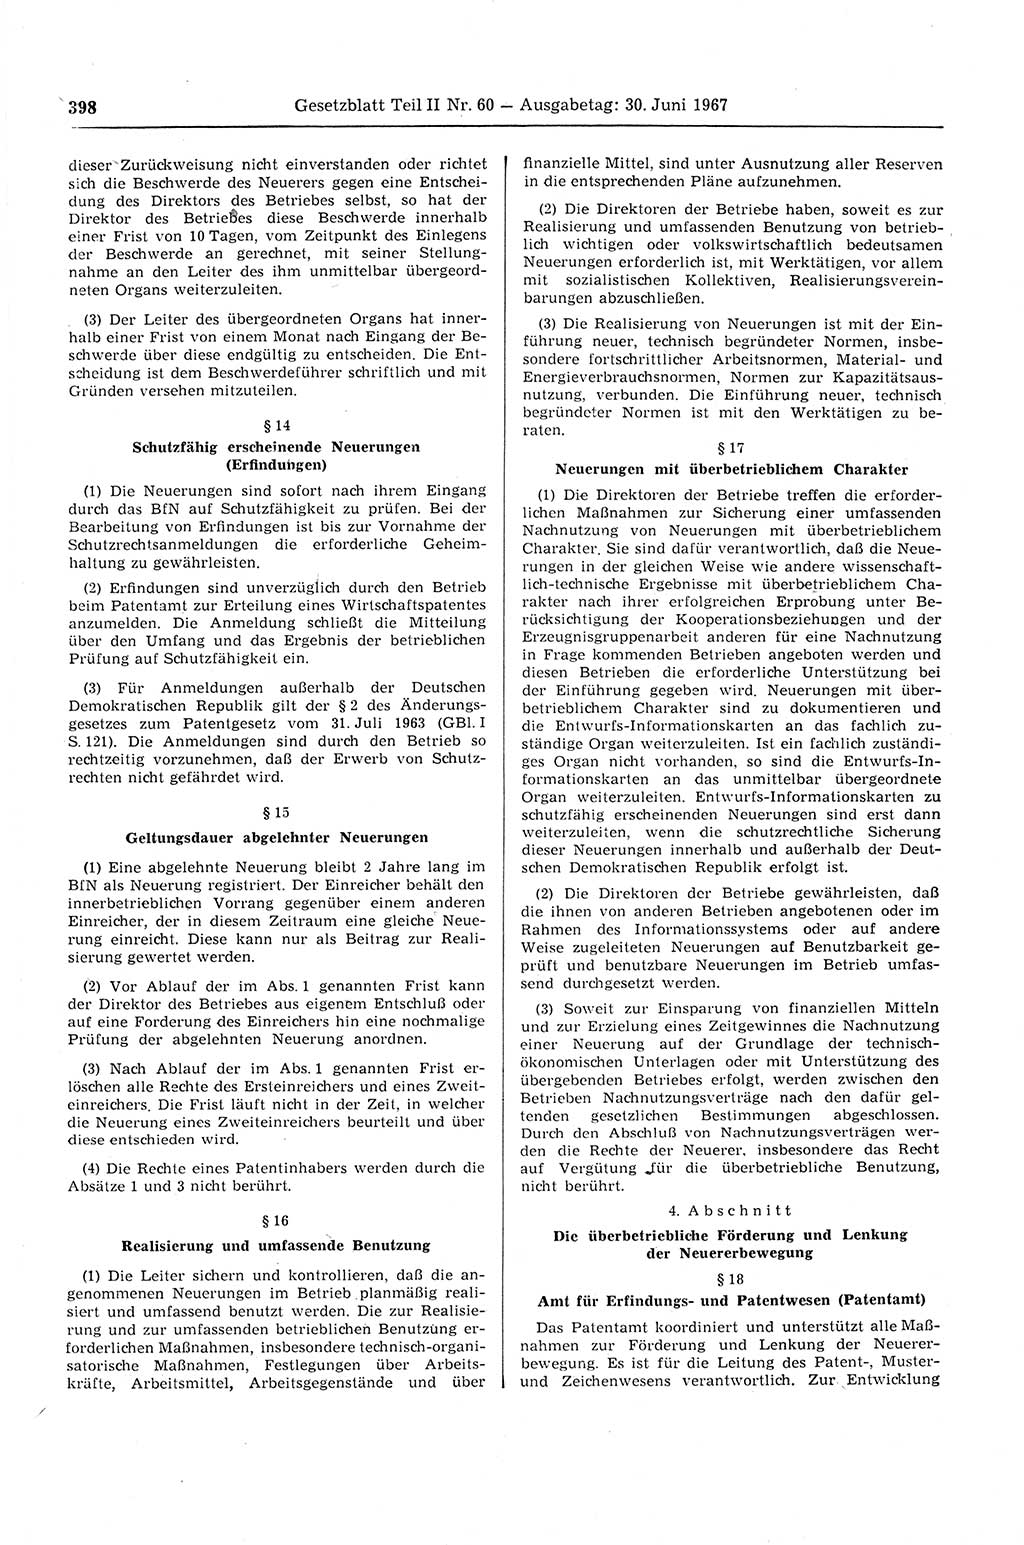 Gesetzblatt (GBl.) der Deutschen Demokratischen Republik (DDR) Teil ⅠⅠ 1967, Seite 398 (GBl. DDR ⅠⅠ 1967, S. 398)